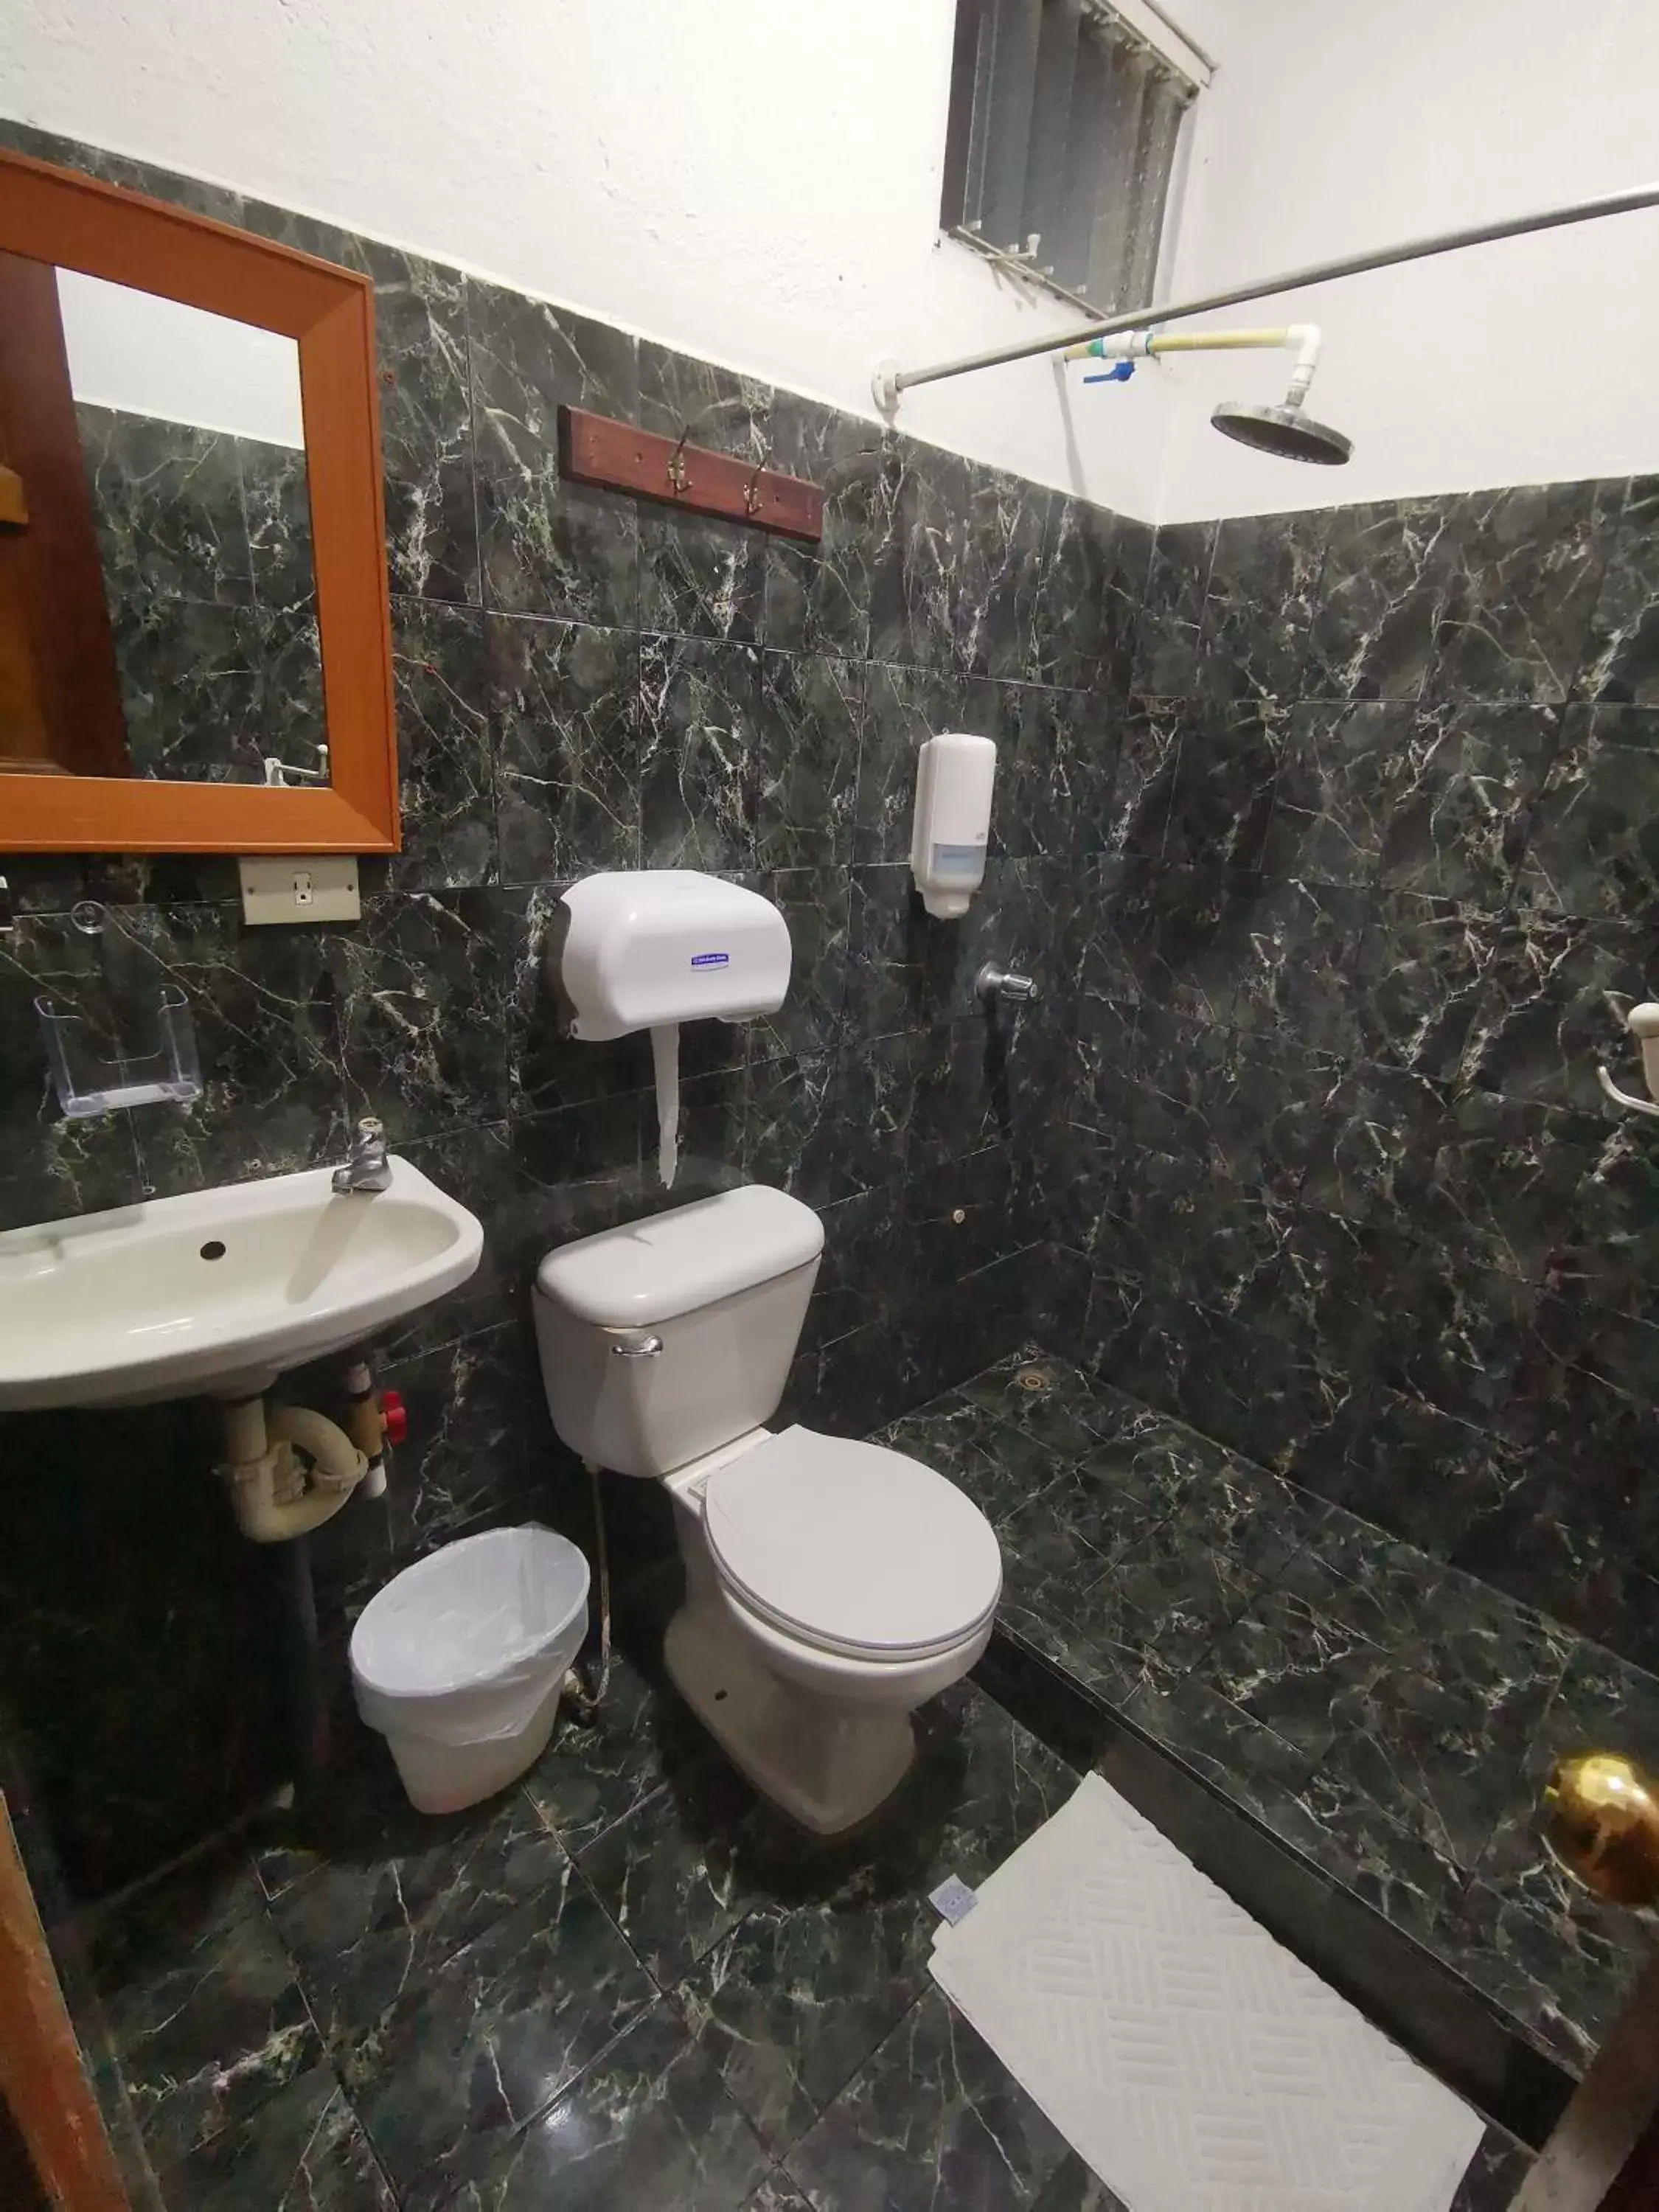 Bathroom in Hotel Aldea Pura Vida